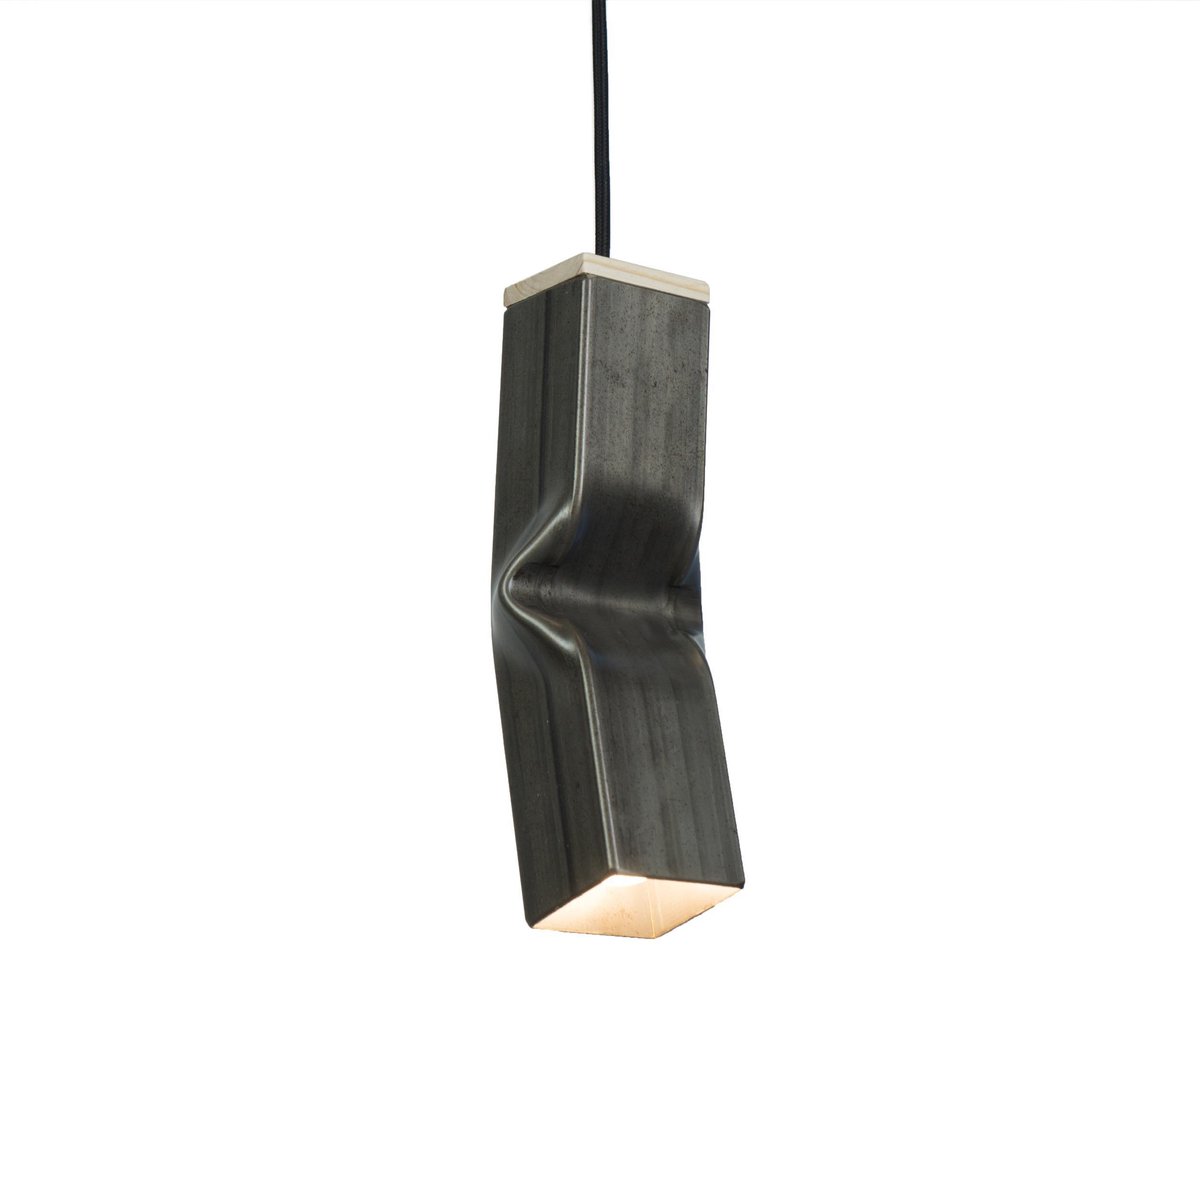 Tolhuijs Bendy Hanglamp - Raw - Industriële hanglamp - Duurzame productie